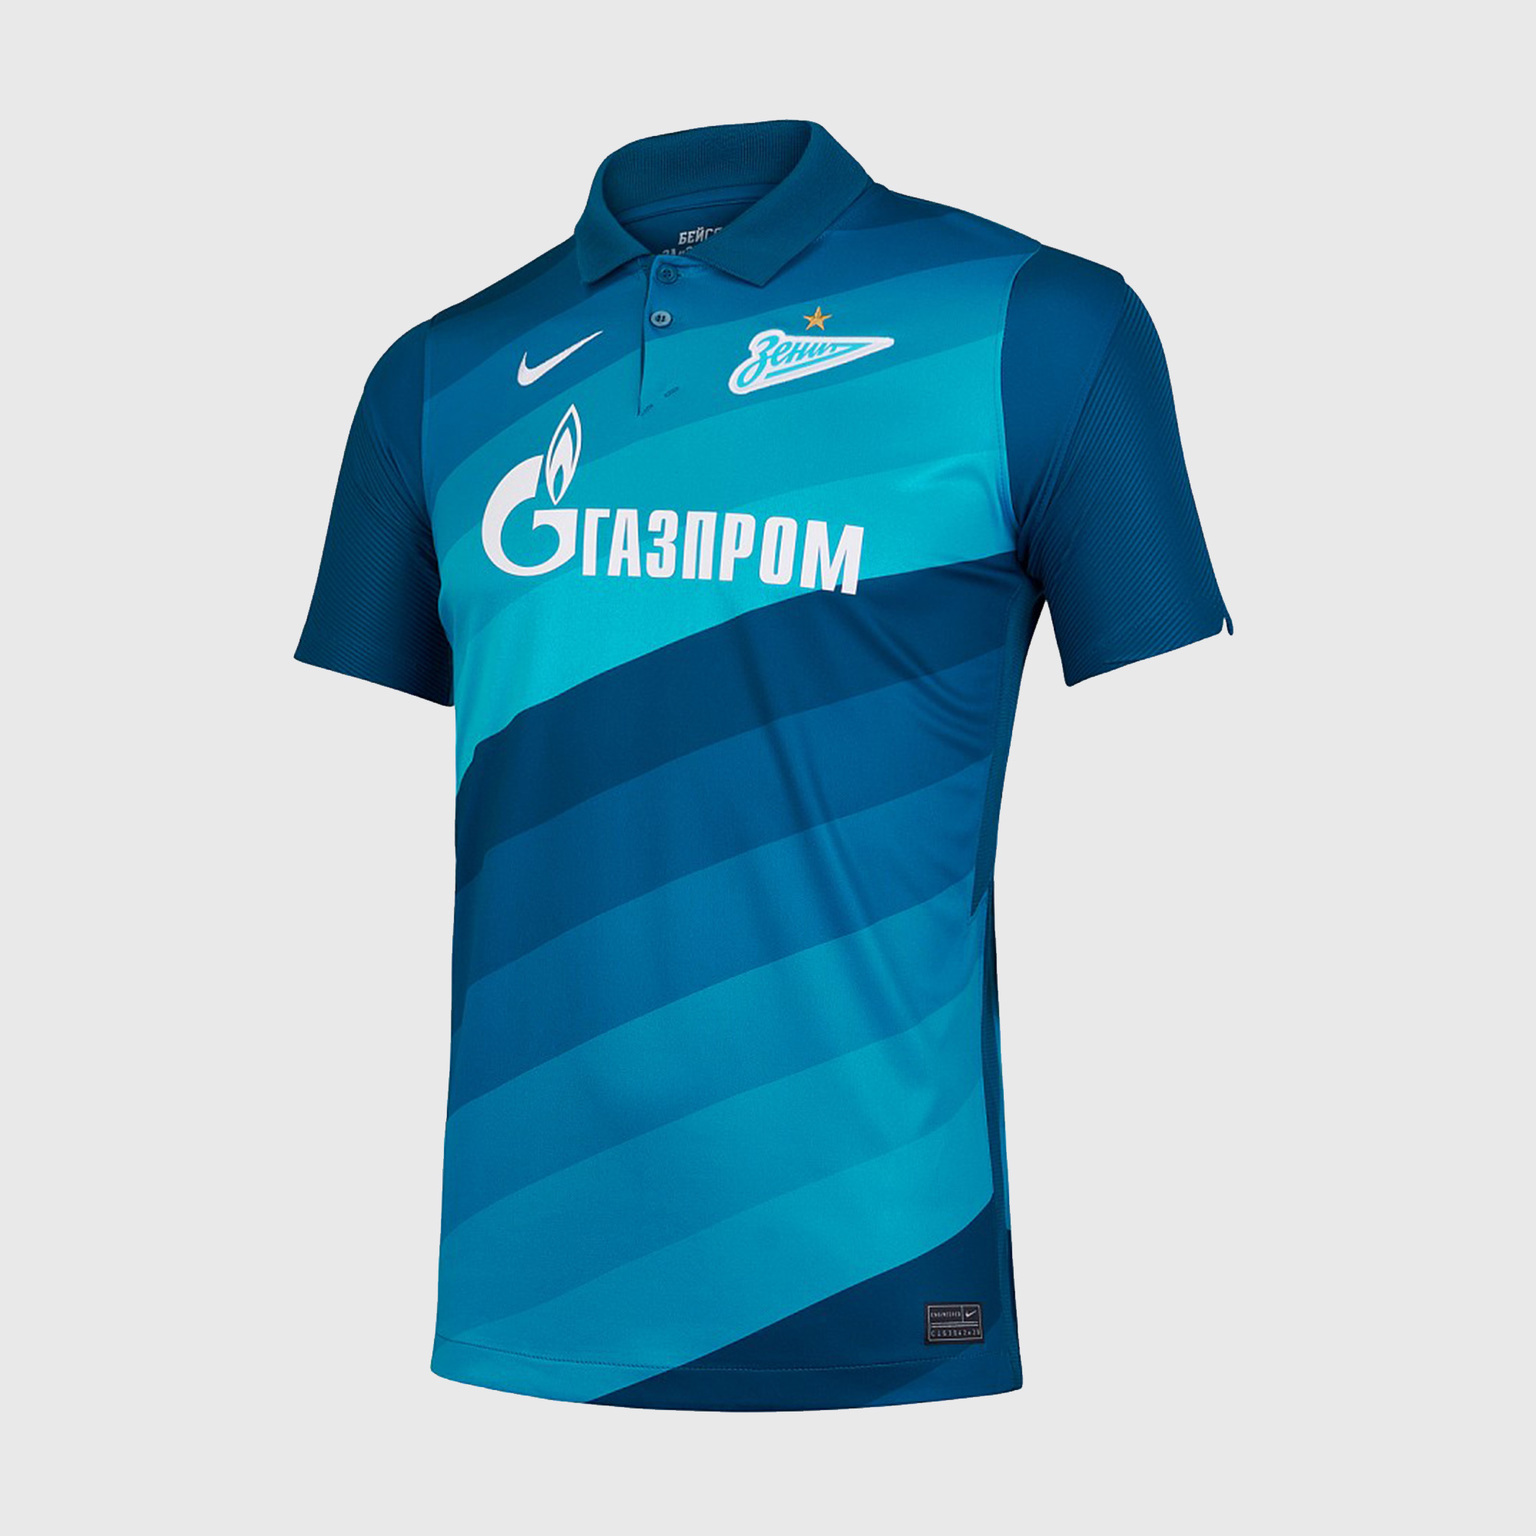 Футболка домашняя подростковая Nike Zenit сезон 2020/21